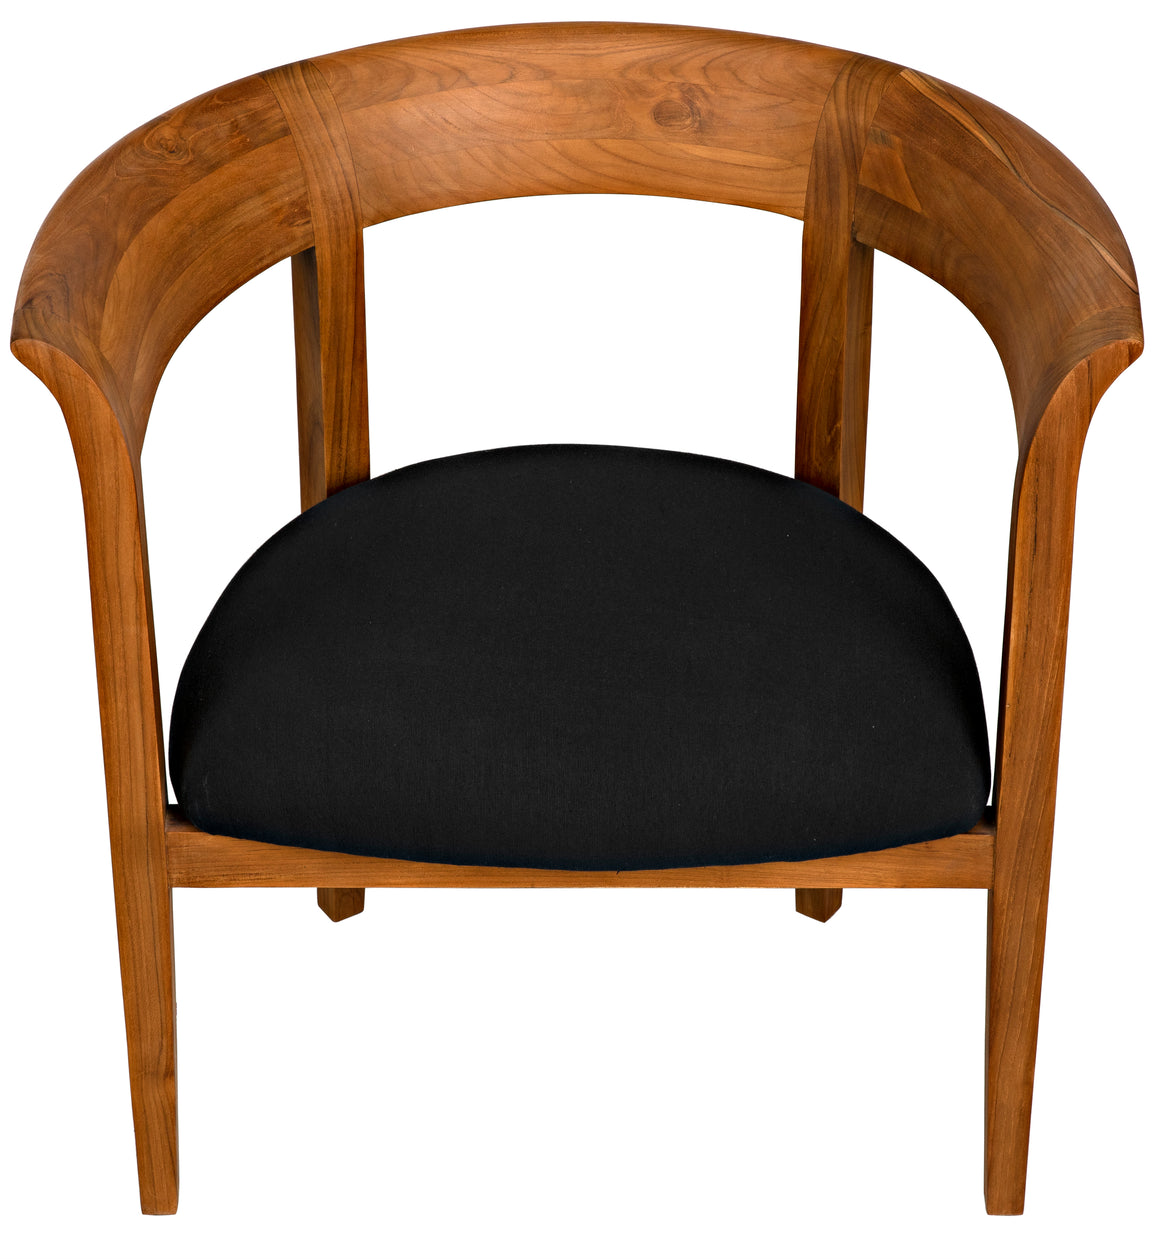 Webster Club Chair - Teak